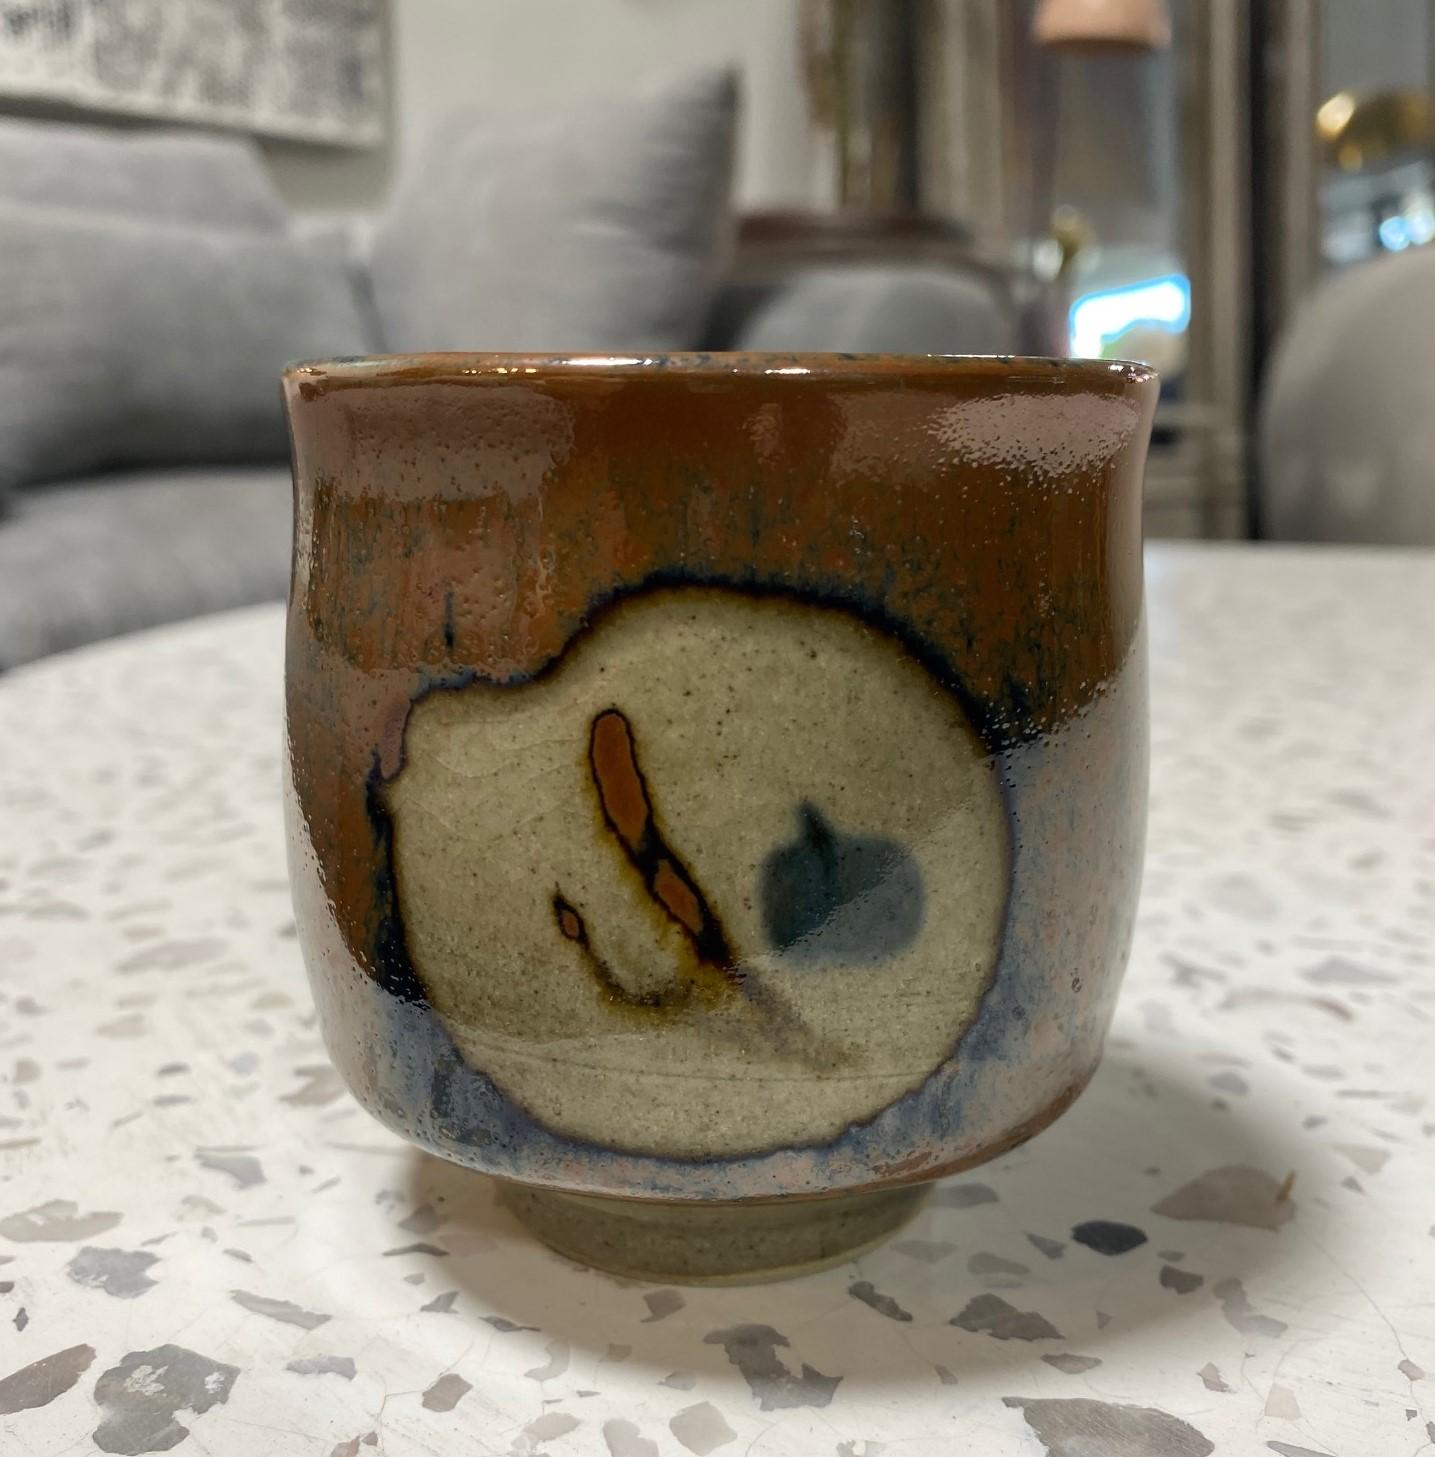 Une tasse à thé Yunomi exquise, magnifiquement travaillée et merveilleusement conçue par le maître potier japonais Shoji Hamada, avec sa technique résistante à la cire et sa riche glaçure Kaki très convoitée sur la poterie en grès de Mashiko. Une